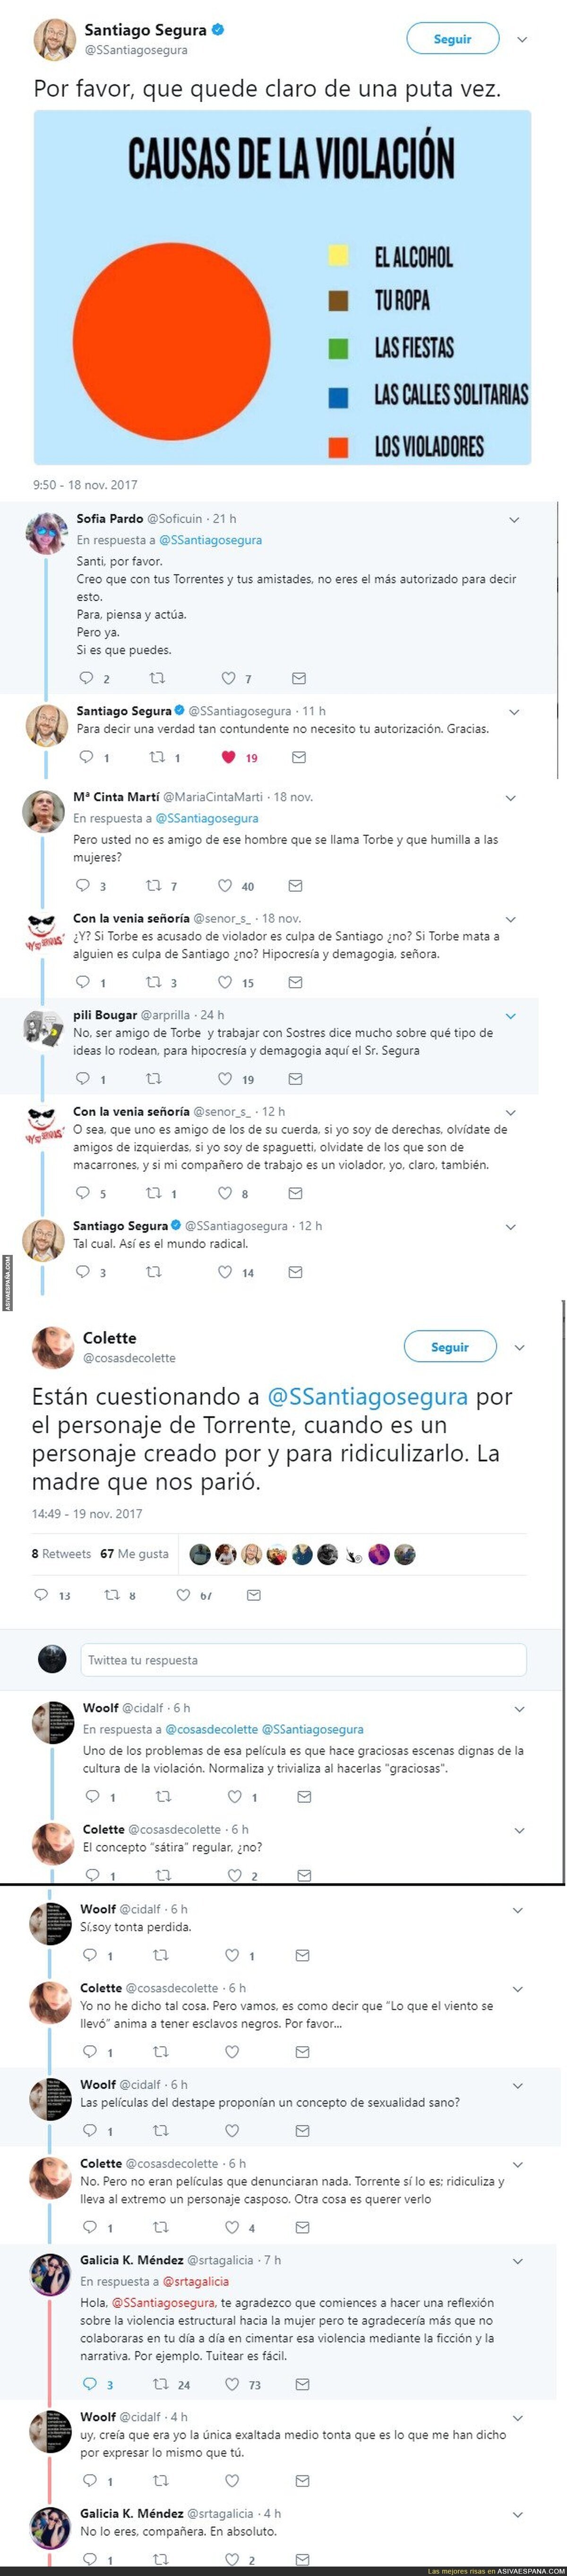 Polémica contra Santiago Segura por denunciar las violaciones y hacer Torrente